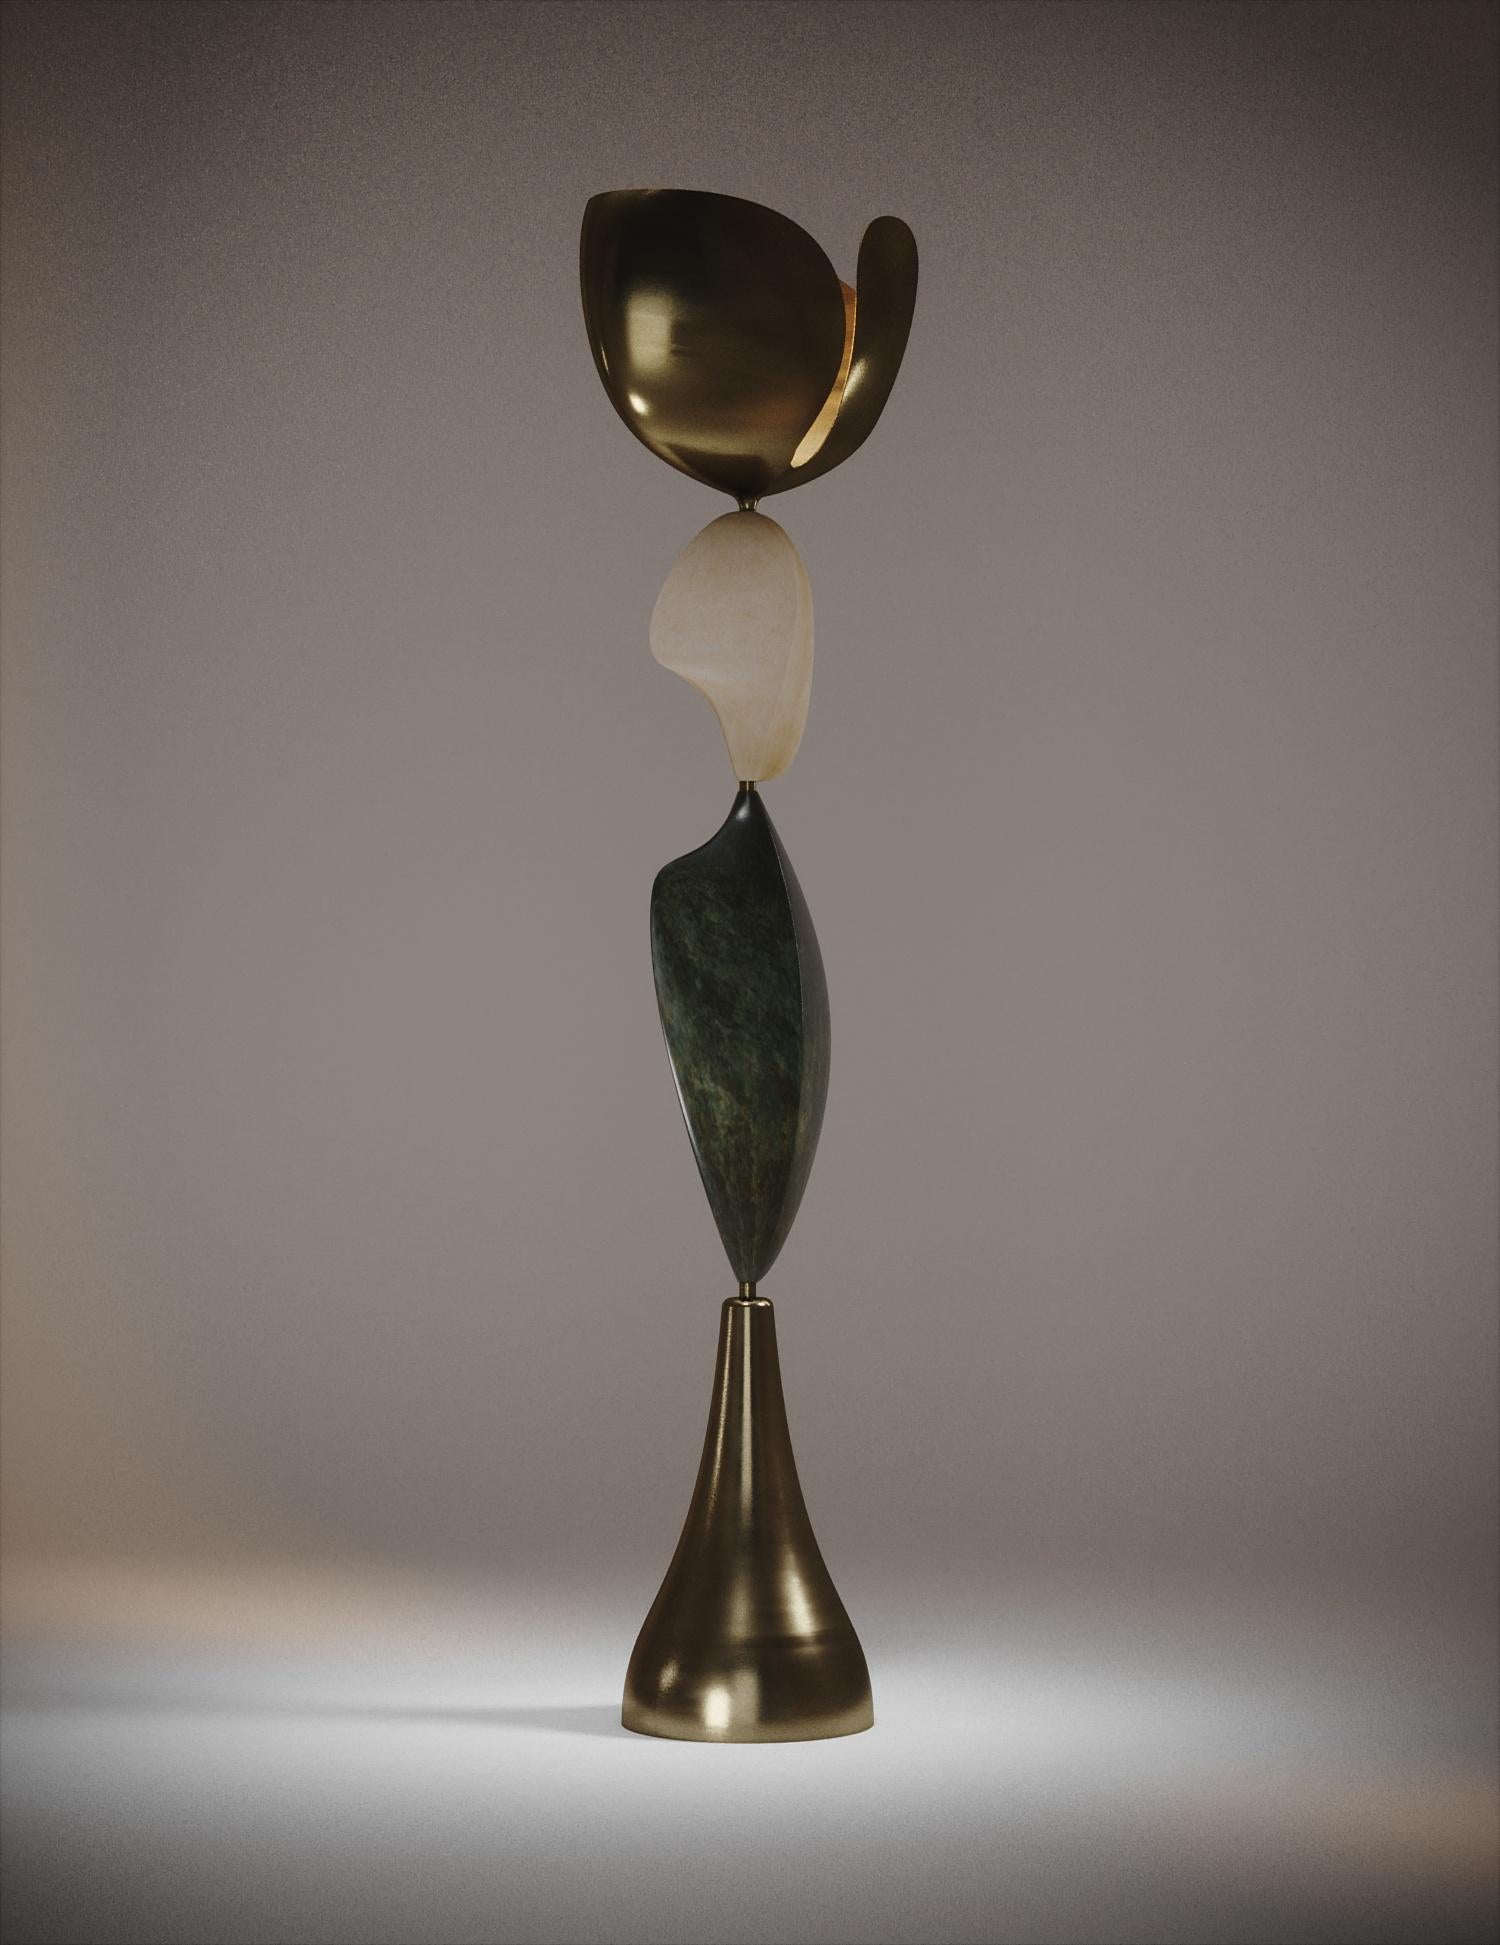 Le lampadaire Cosmo Sky de Kifu Paris est une pièce fantaisiste et sculpturale, incrustée en laiton bronze-patina avec une incrustation de parchemin ; créant une sensation vintage à la pièce. Les formes amorphes sont une réinterprétation abstraite